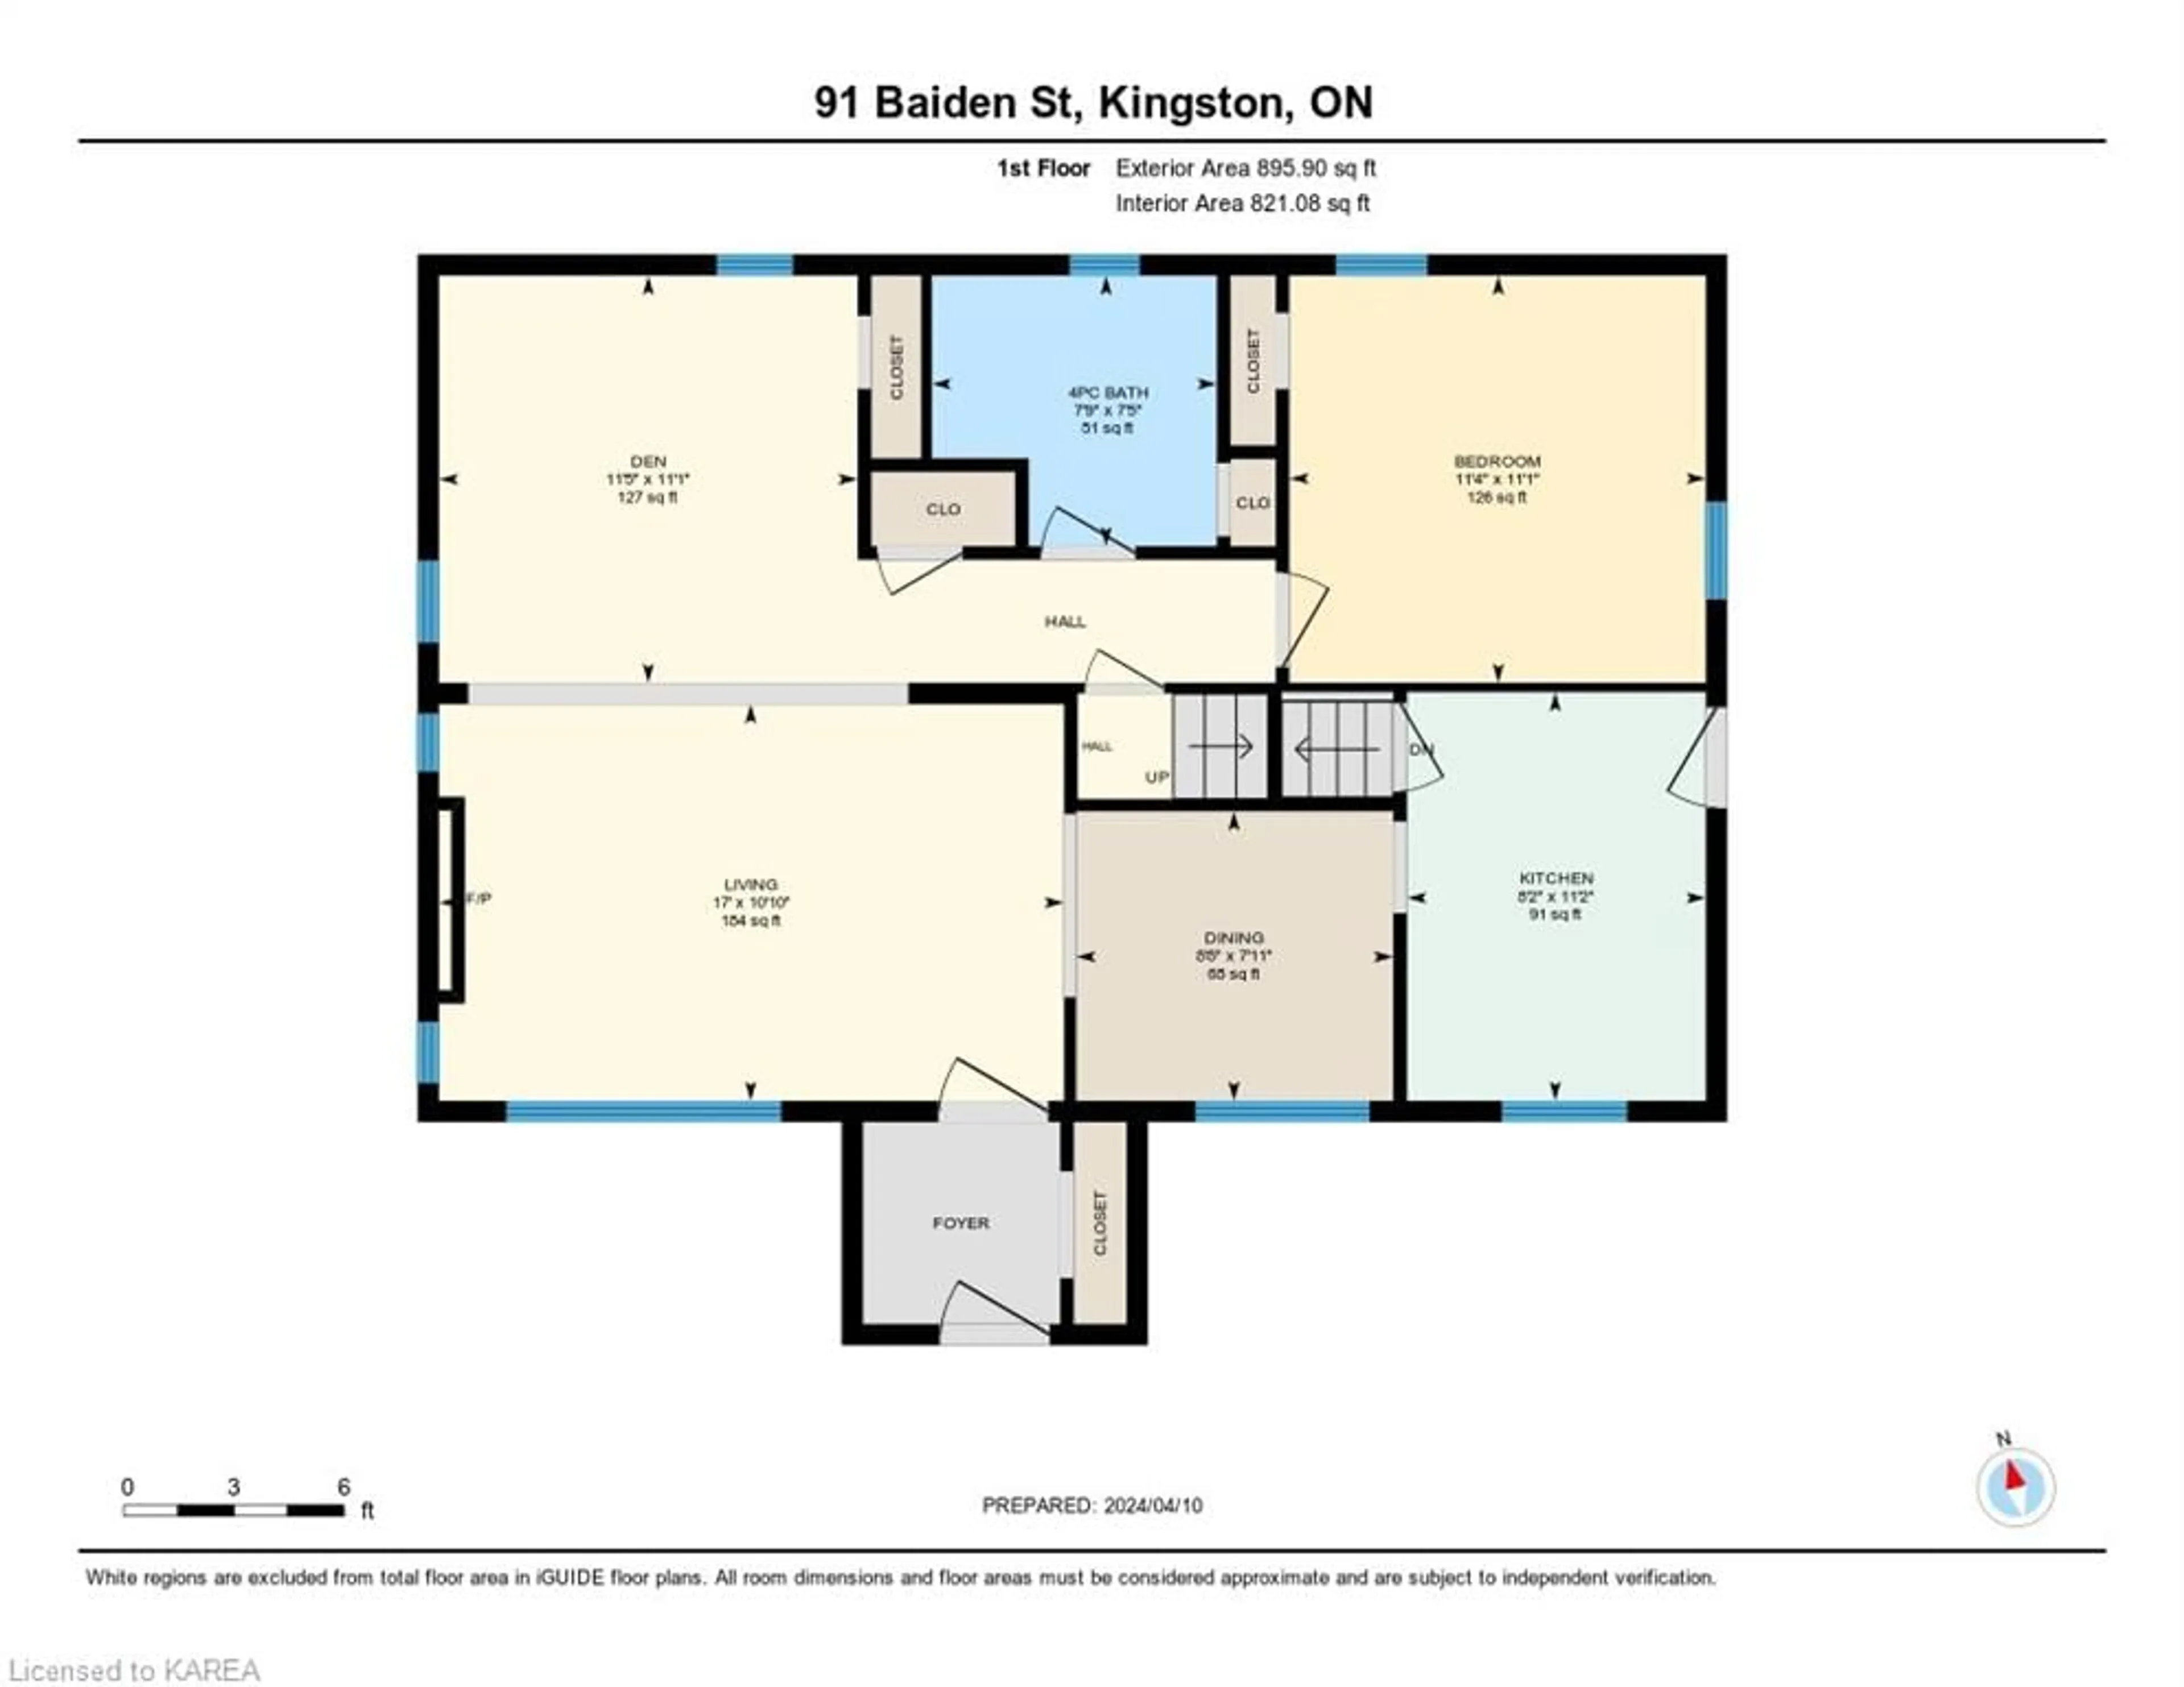 Floor plan for 91 Baiden St, Kingston Ontario K7M 2K2